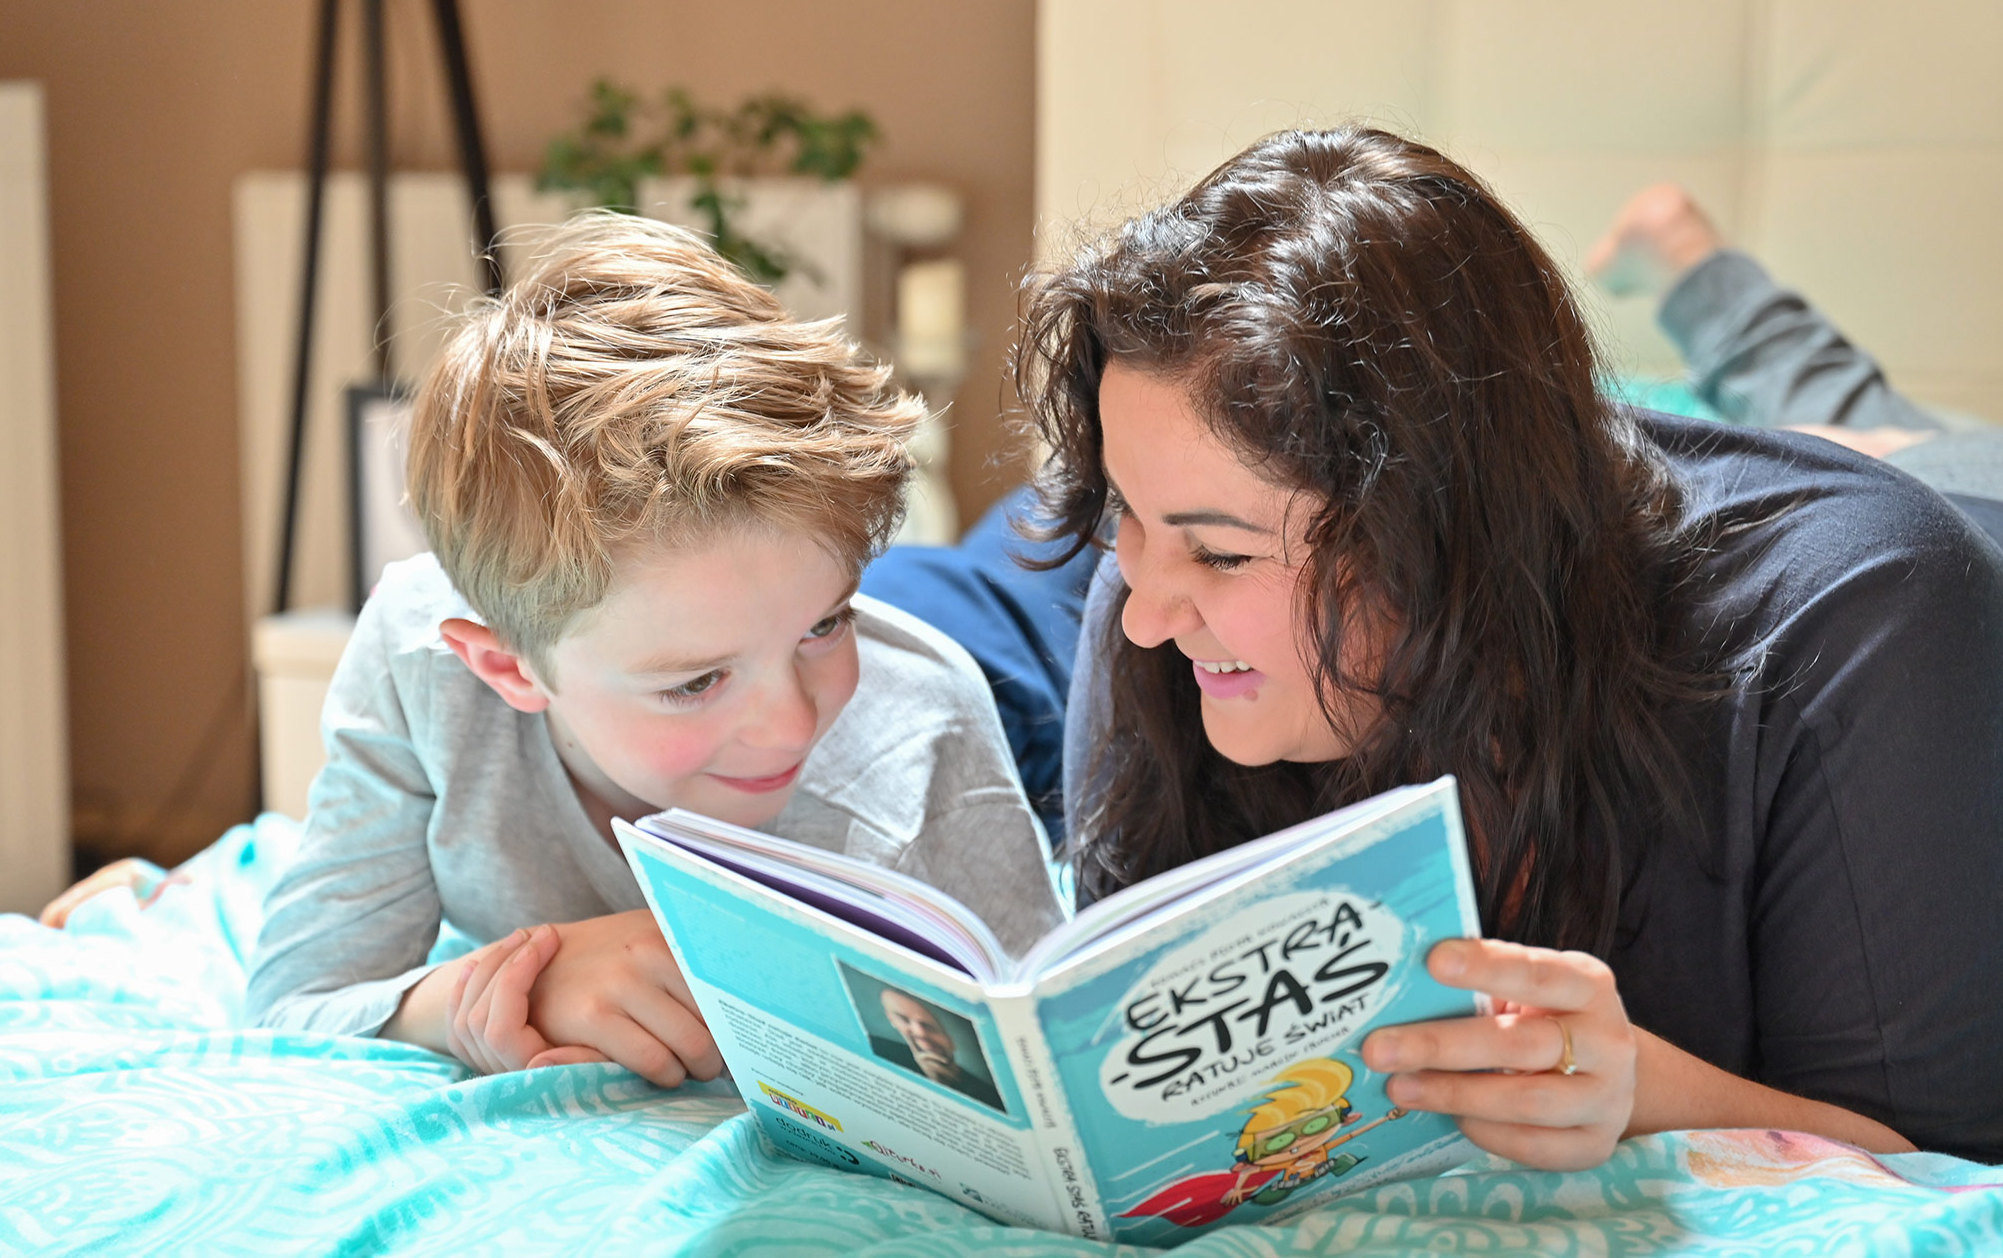 Dlaczego warto czytać książki razem z dzieckiem